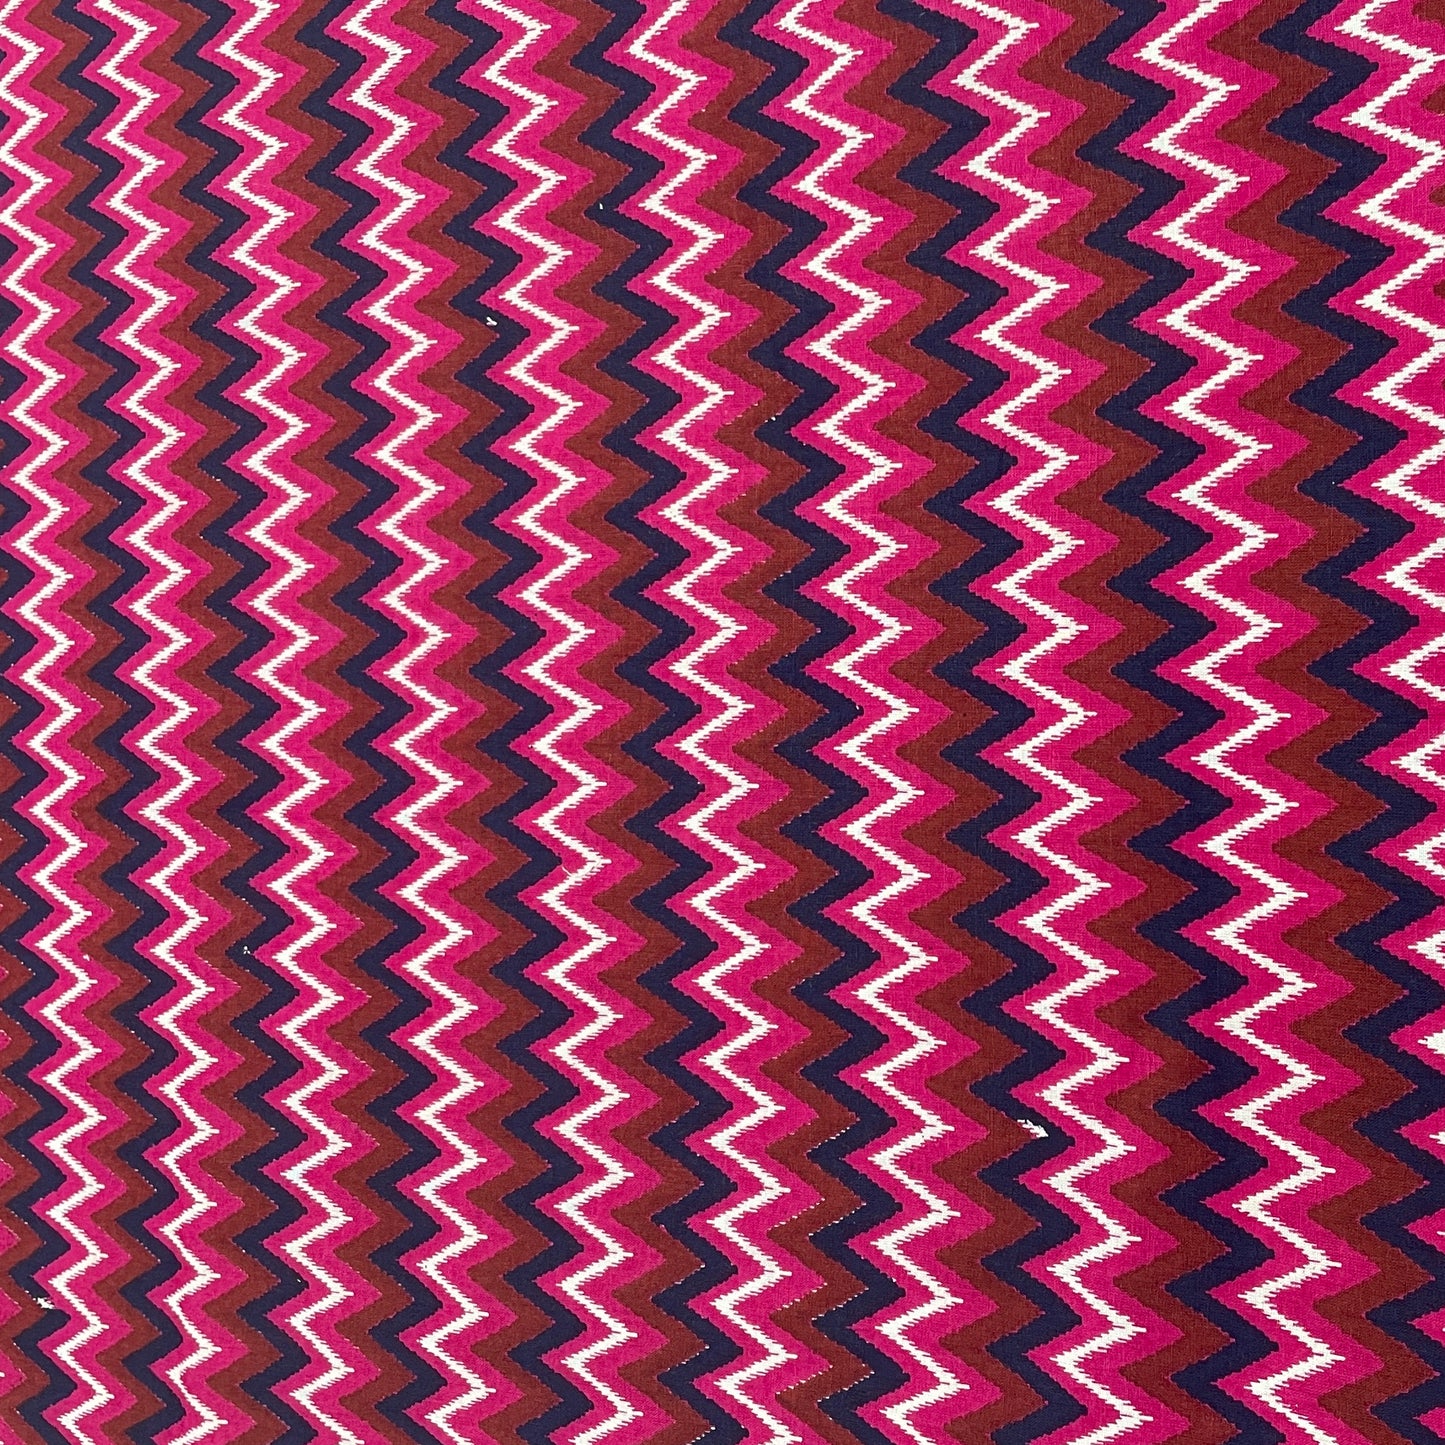 Maroon & Multicolor Chevron Print Cotton Fabric - TradeUNO